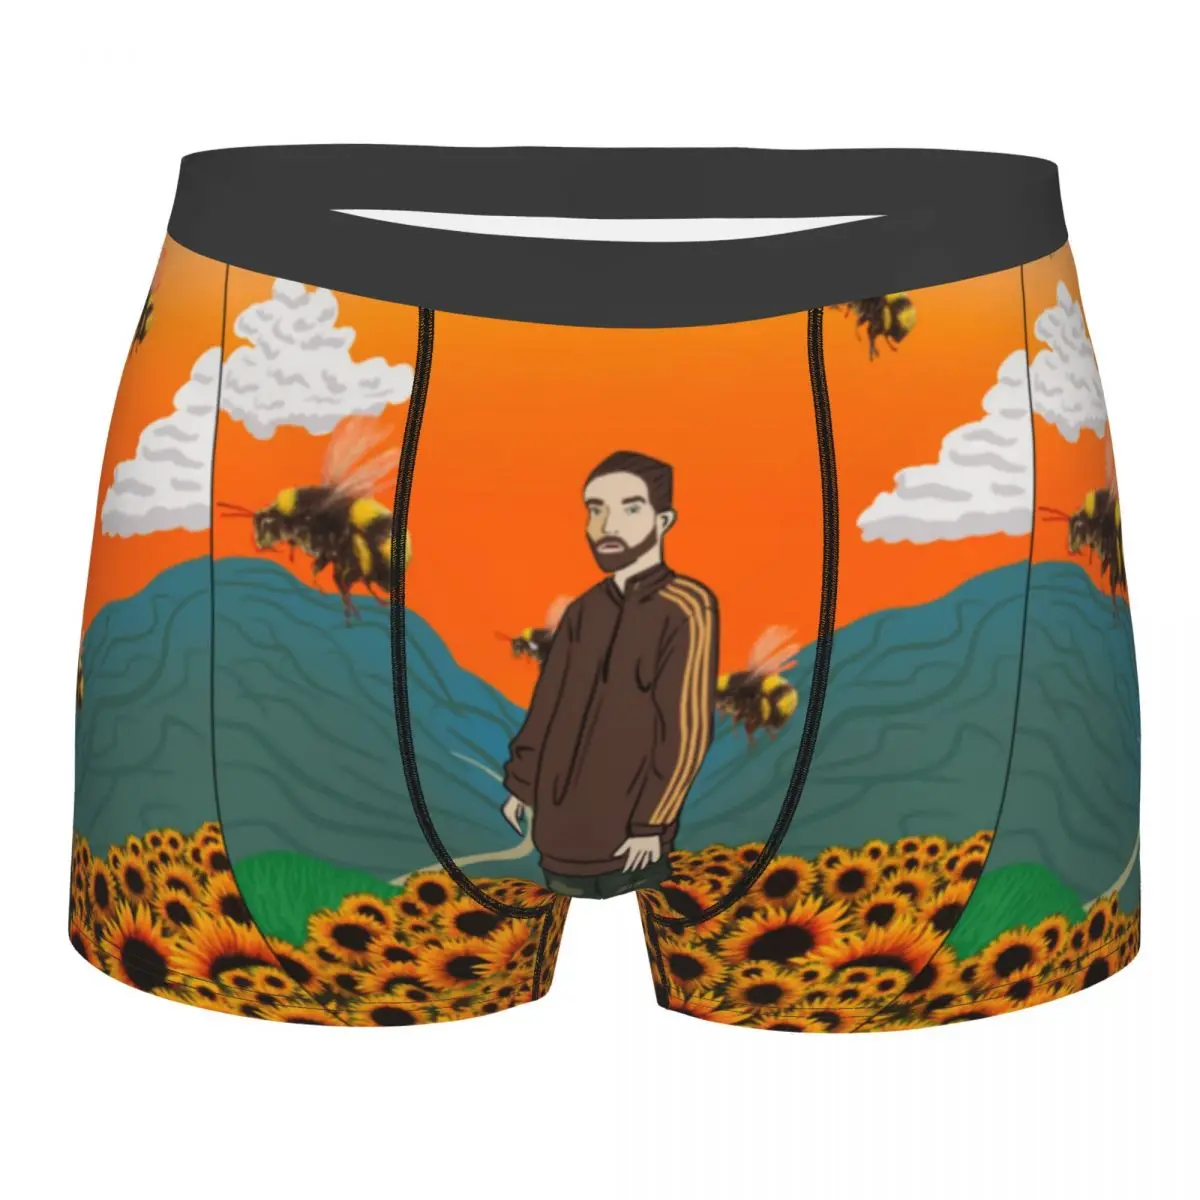 

Men Flower Boy Robert Underwear Robert Pattinson Standing Meme Boxer Briefs Shorts Panties Homme Breathable Underpants Plus Size